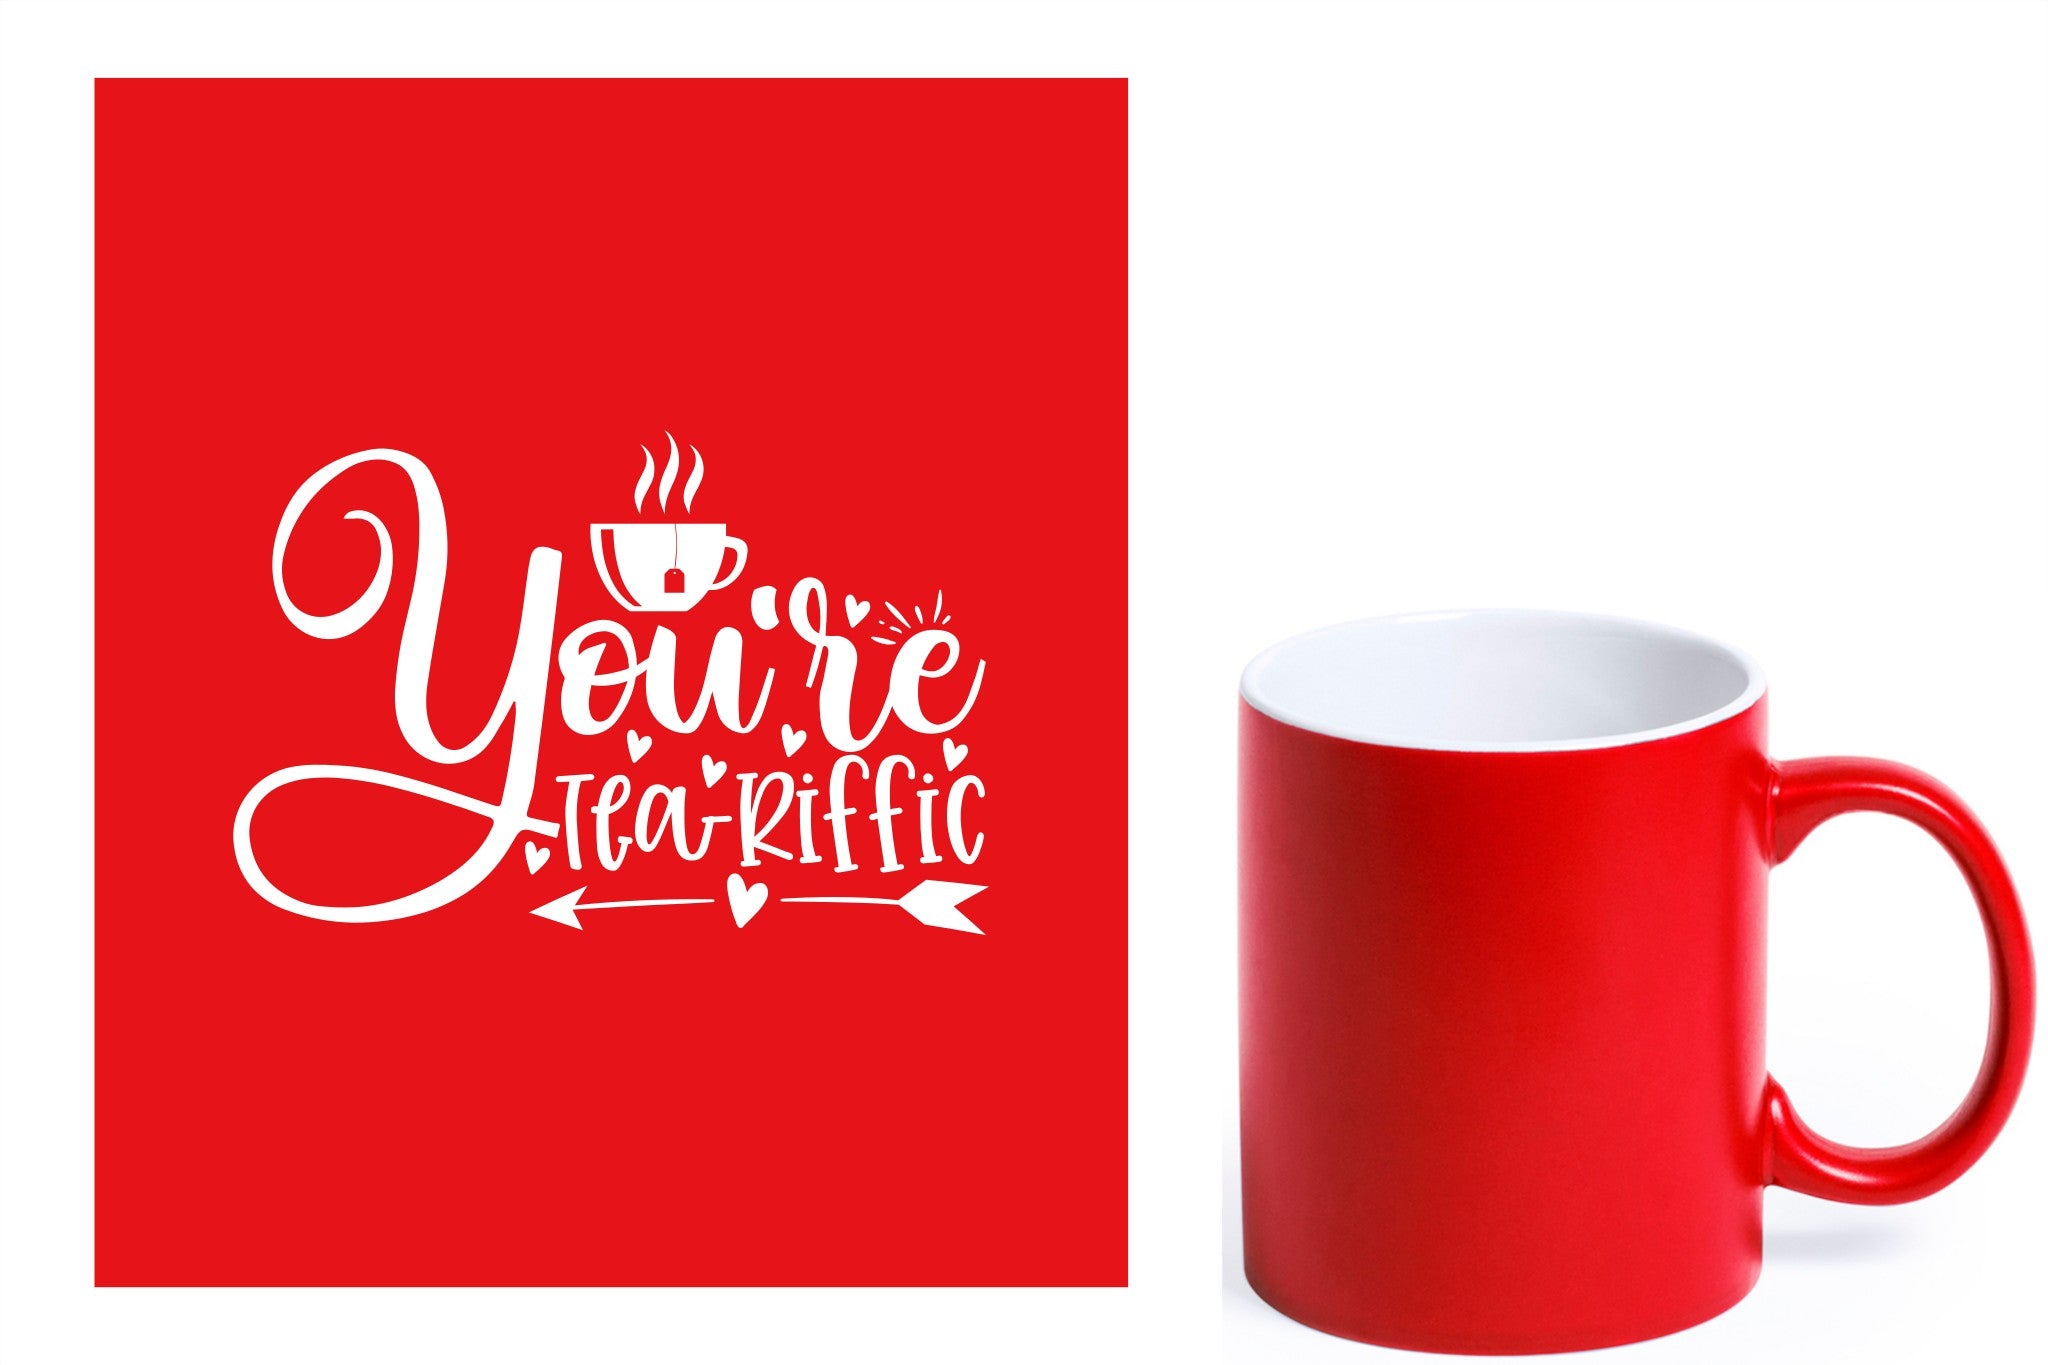 rode keramische mok met witte gravure  'You're teariffic'.